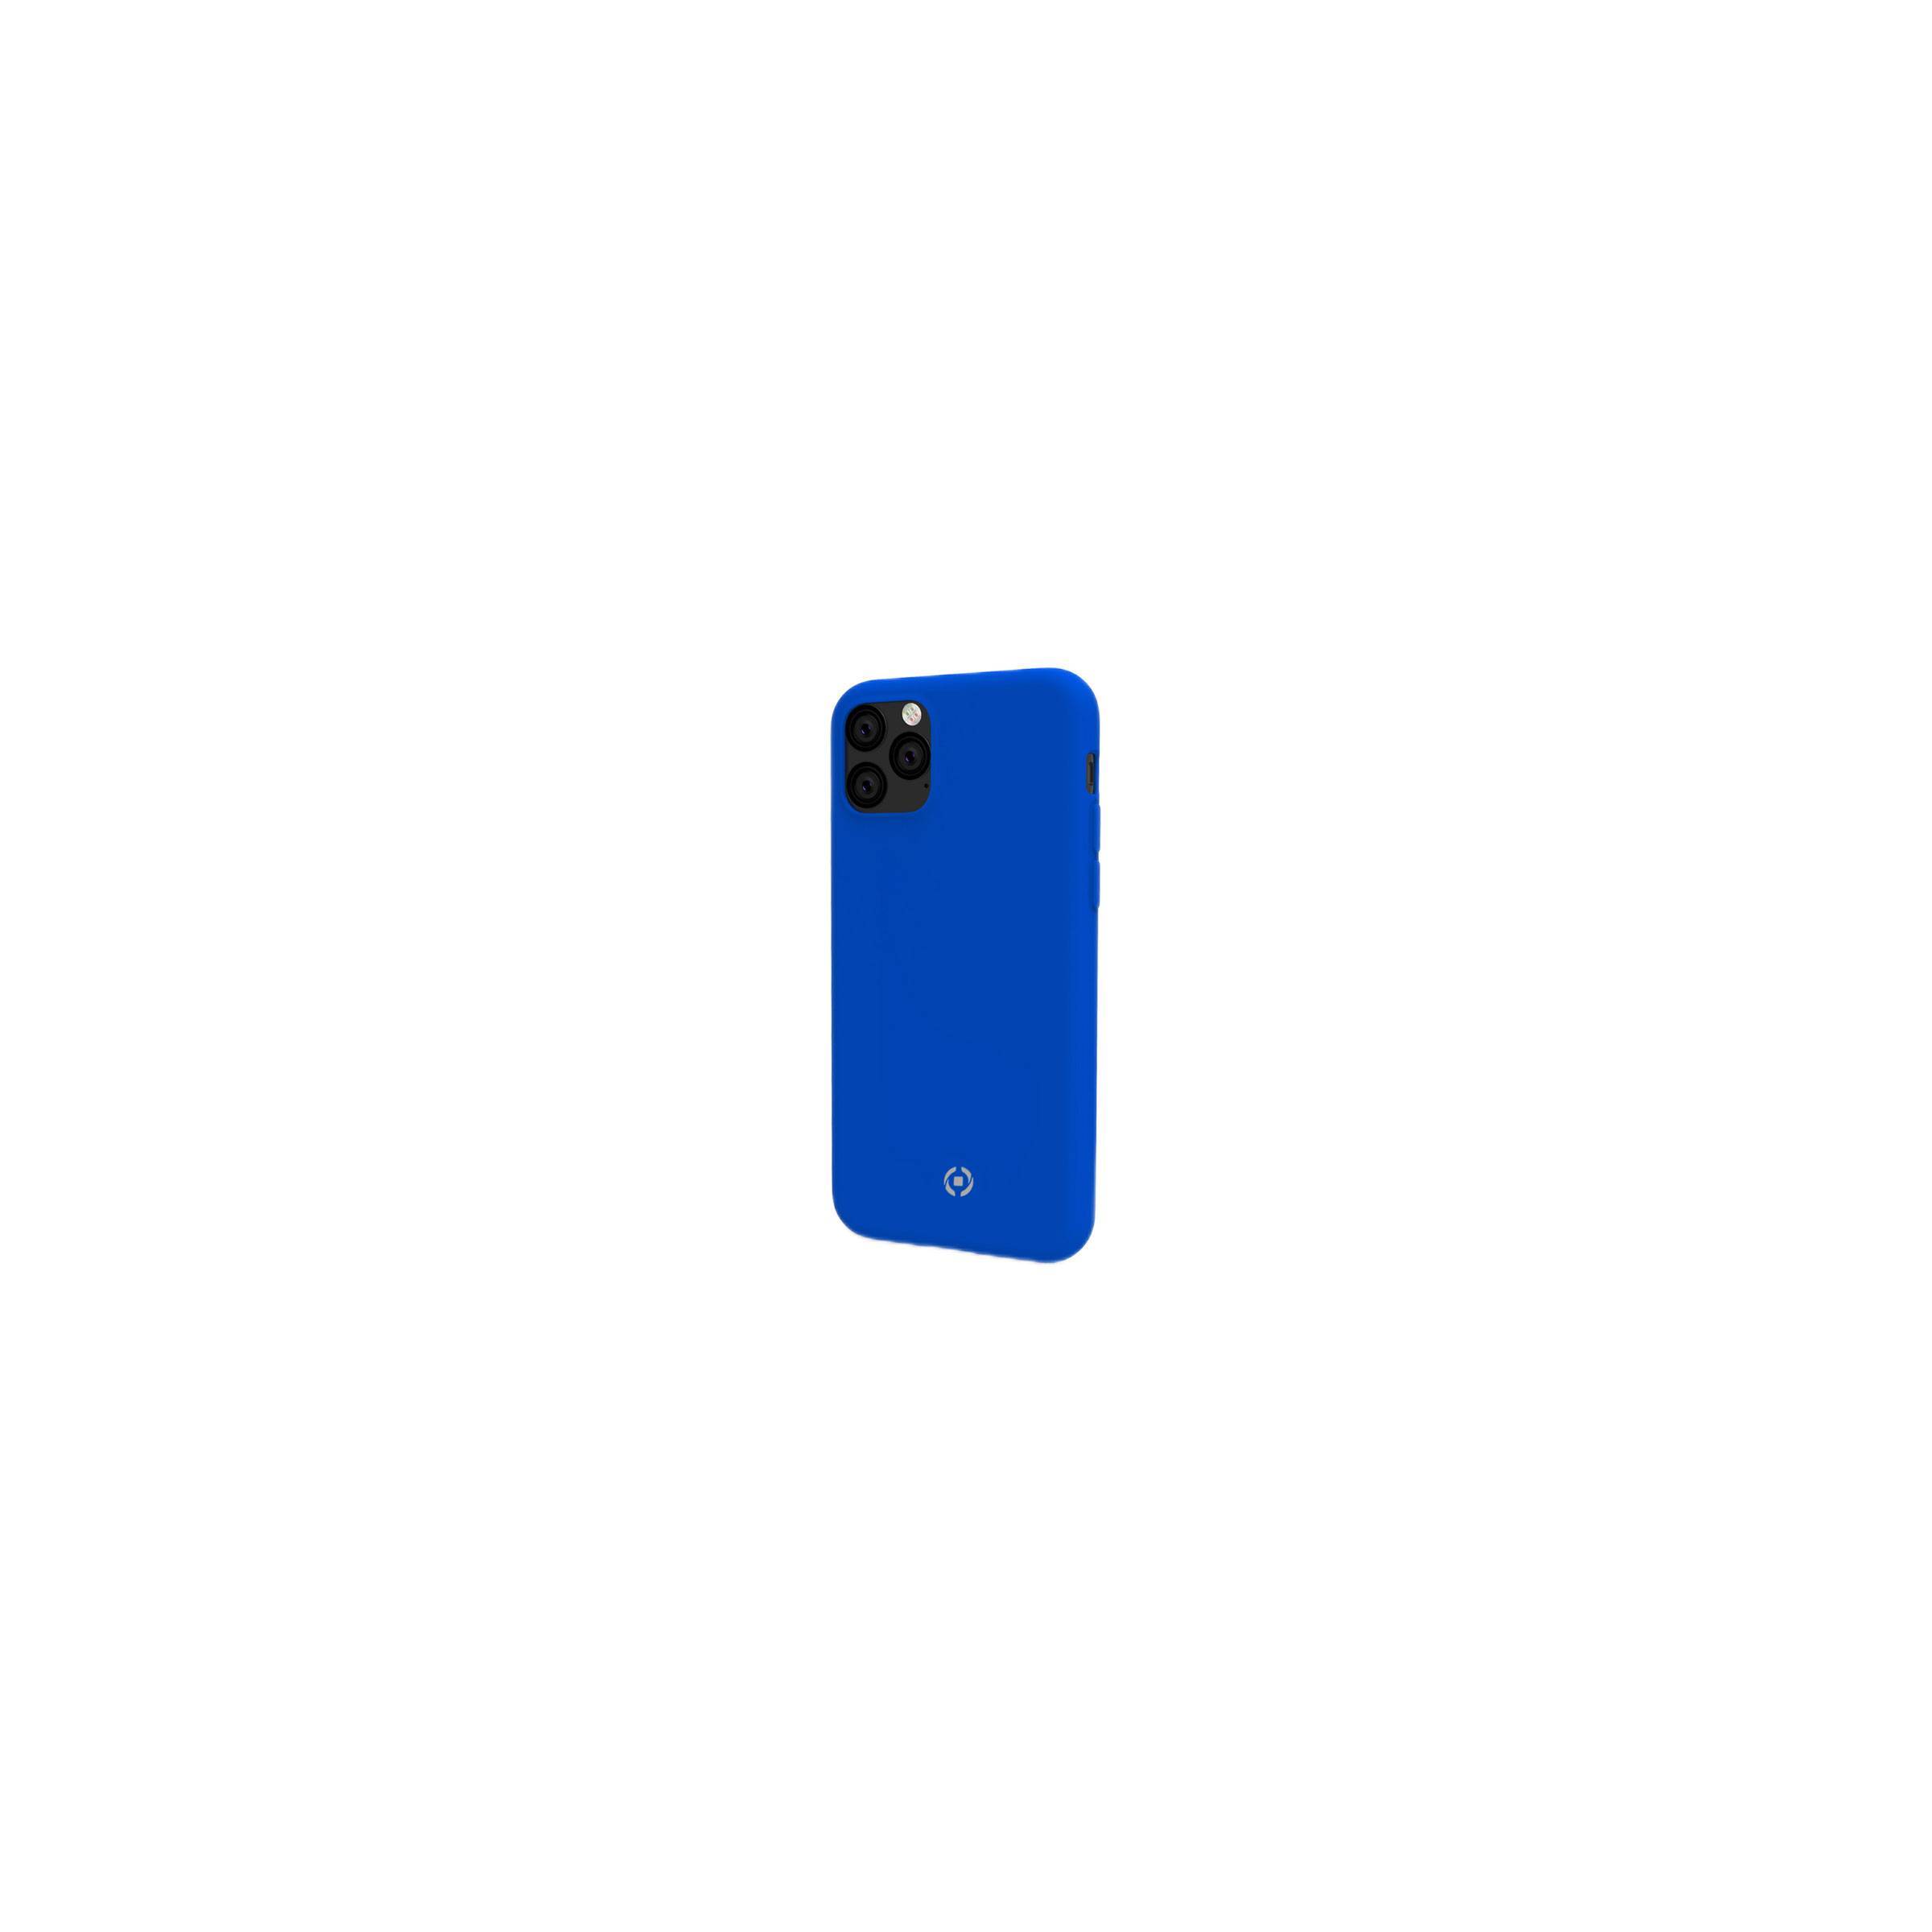 Bilde av Celly Feeling Iphone 11 Pro Silikone Cover, Blå